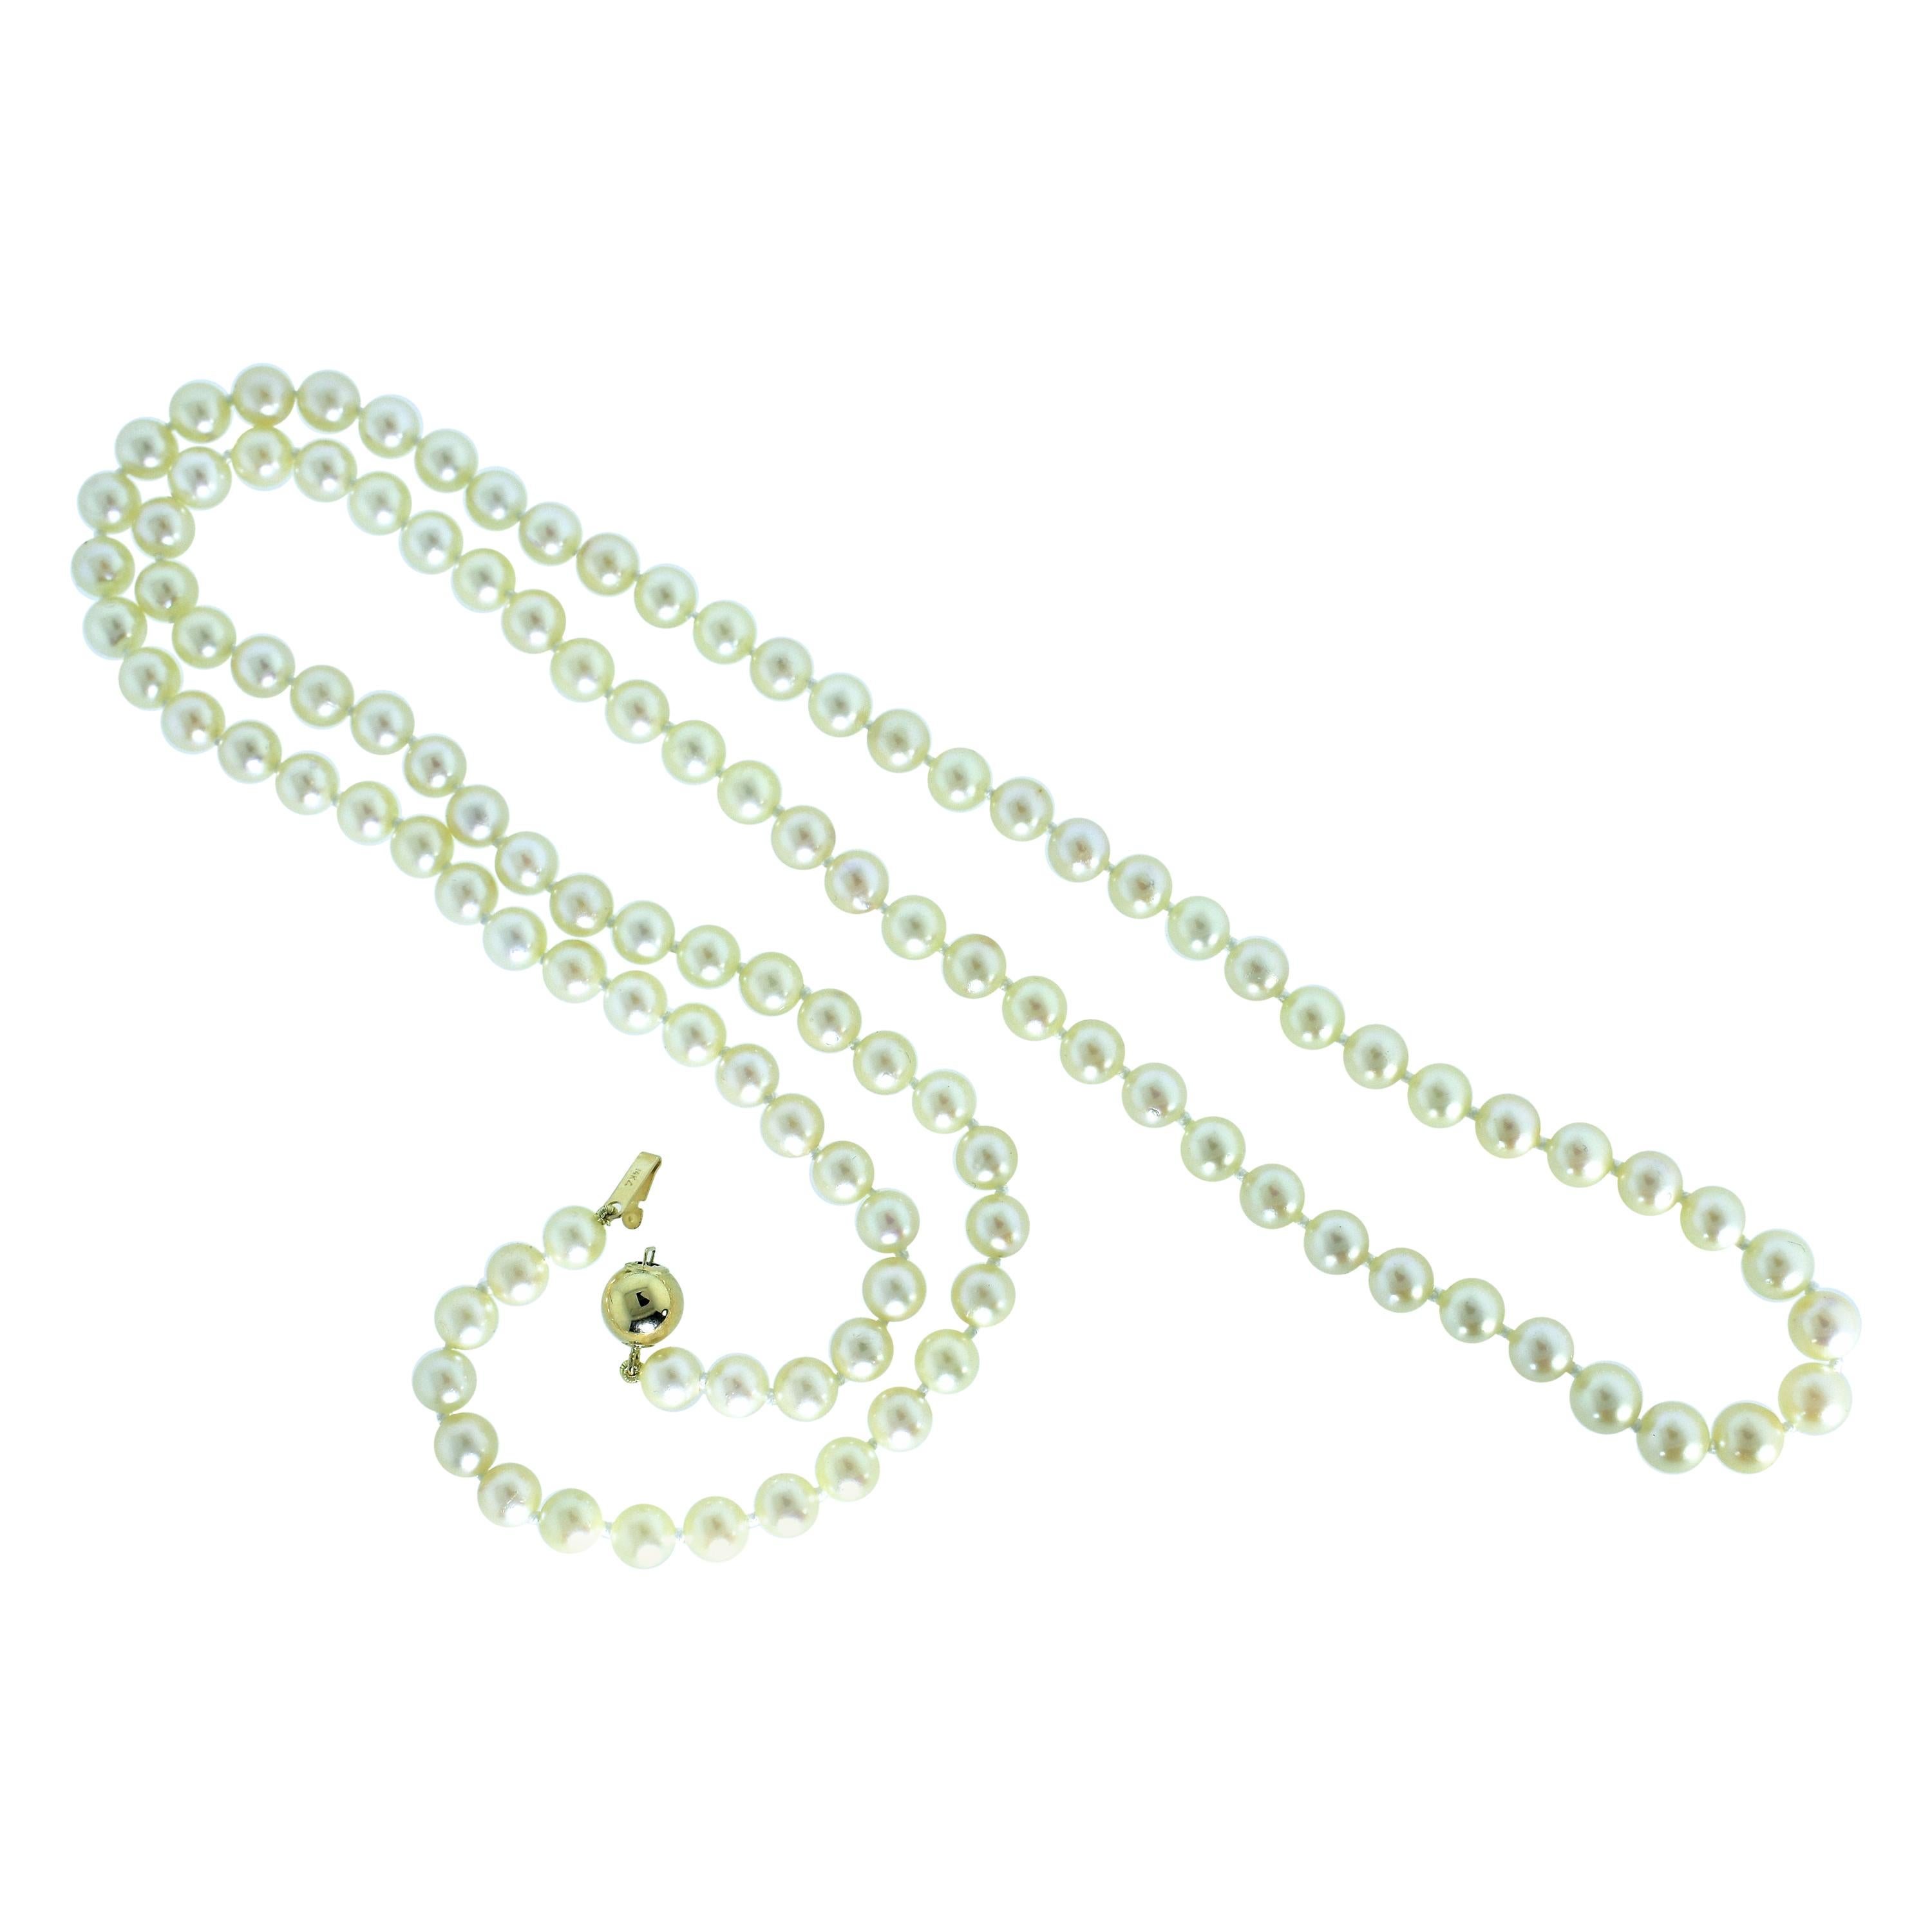 Japanische Akoya-Zuchtstrang, 32 Zoll in der Länge, mit 112 Perlen und fertig mit einem 14K Verschluss, die Perlen sind Salzwasser, rund mit Glanz, sie reichen in der Größe von 6,02 mm bis zu 6,68 mm.  Diese Strähne kann doppelt oder nur als eine